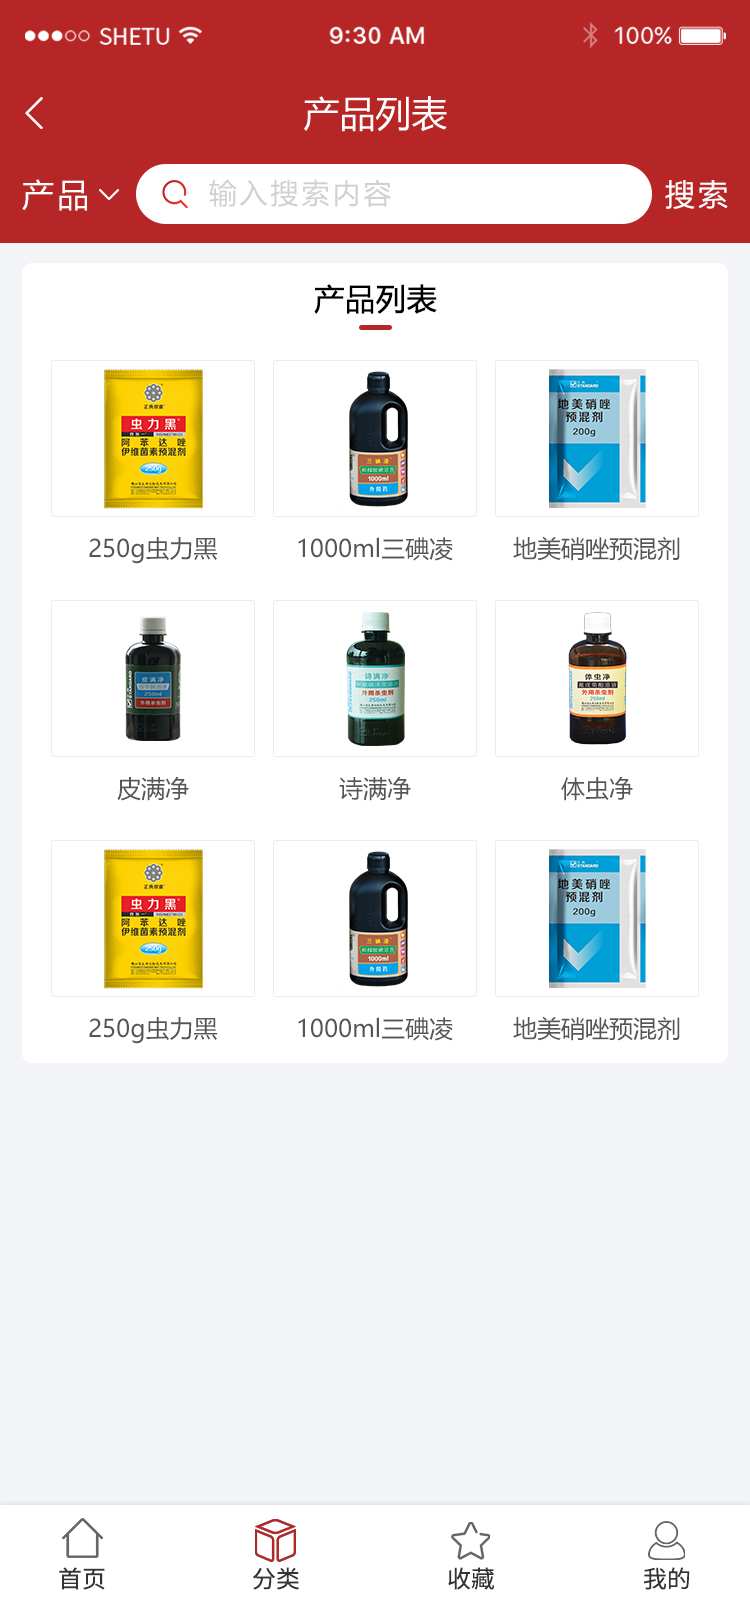 6-产品列表.jpg